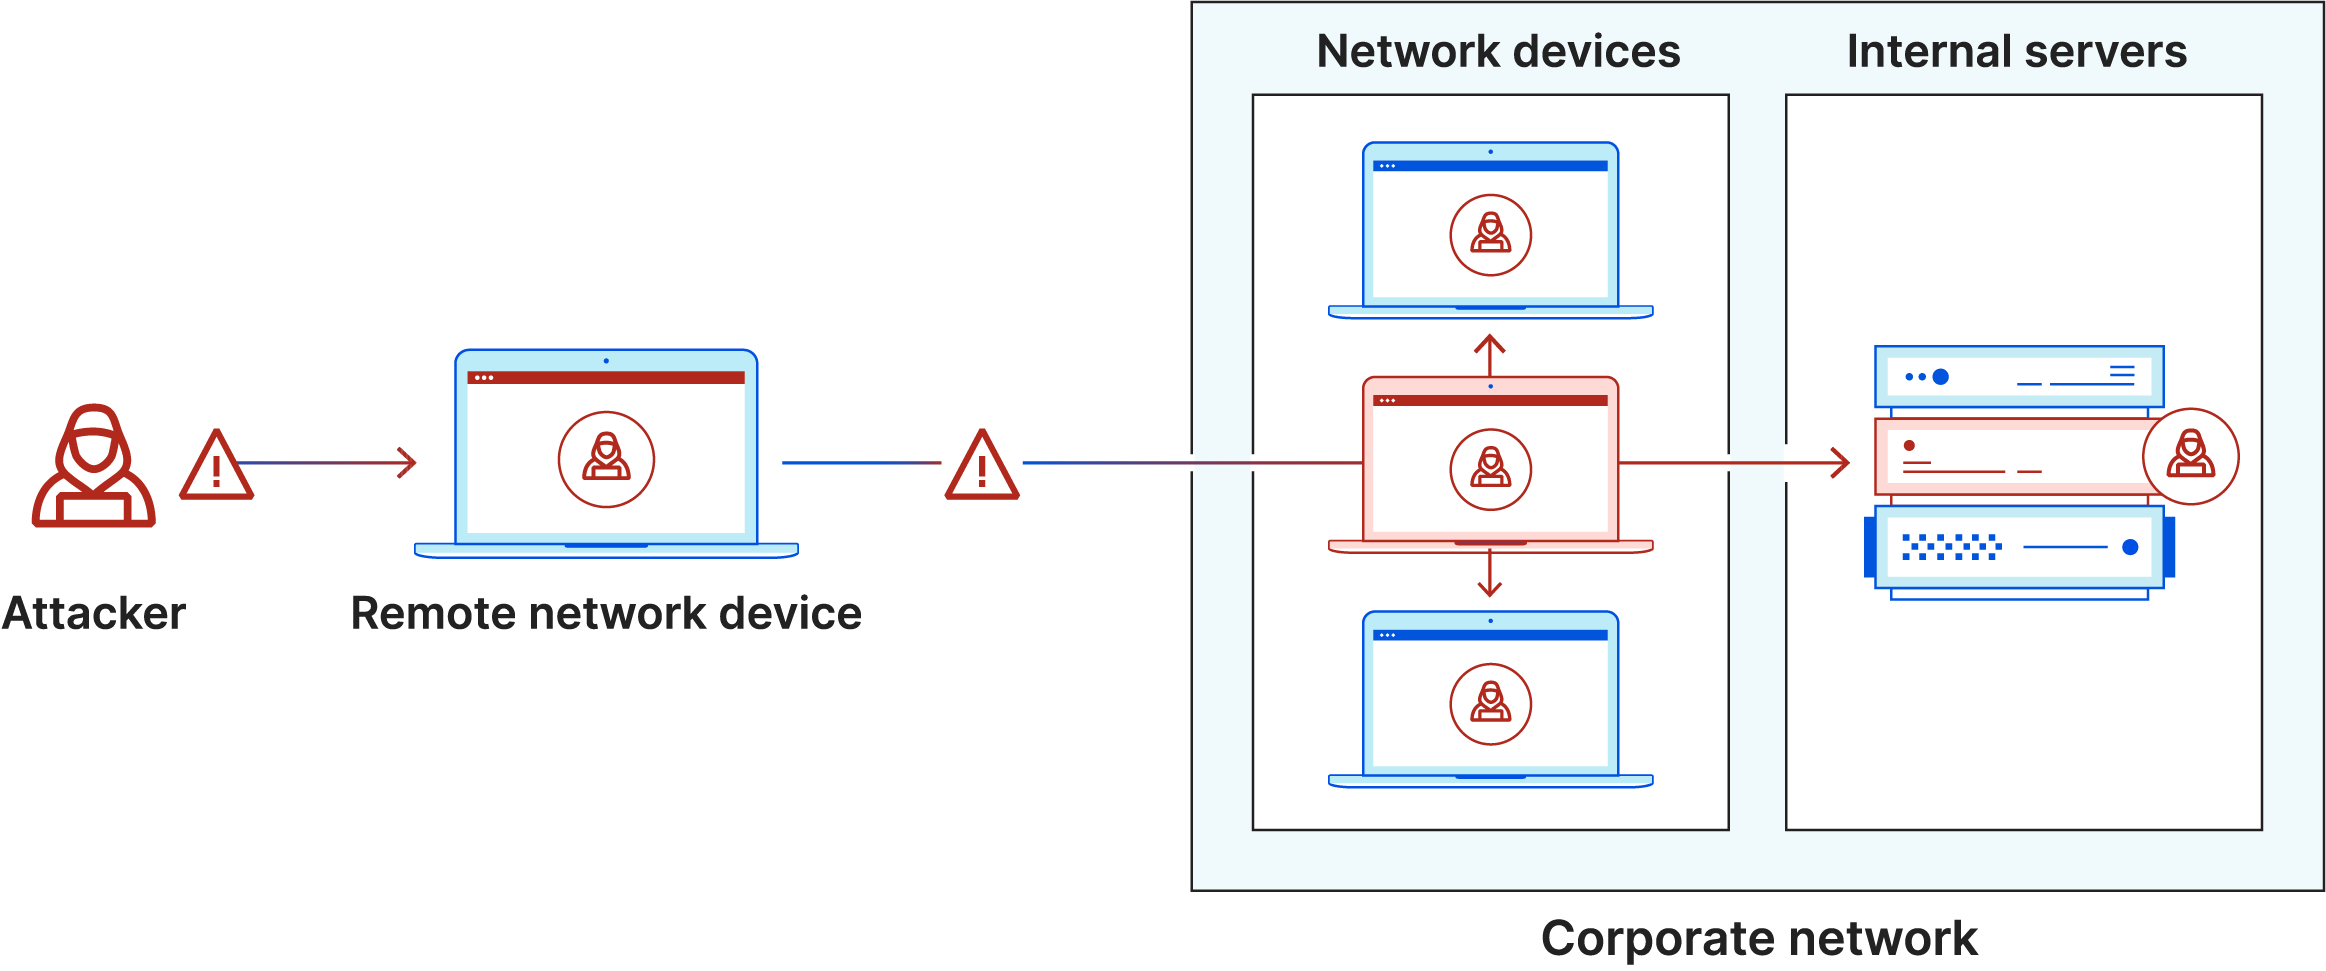 Diagrama de movimiento lateral. El atacante infecta el portátil, entra en la red segura y se desplaza lateralmente a otros ordenadores y servidores.